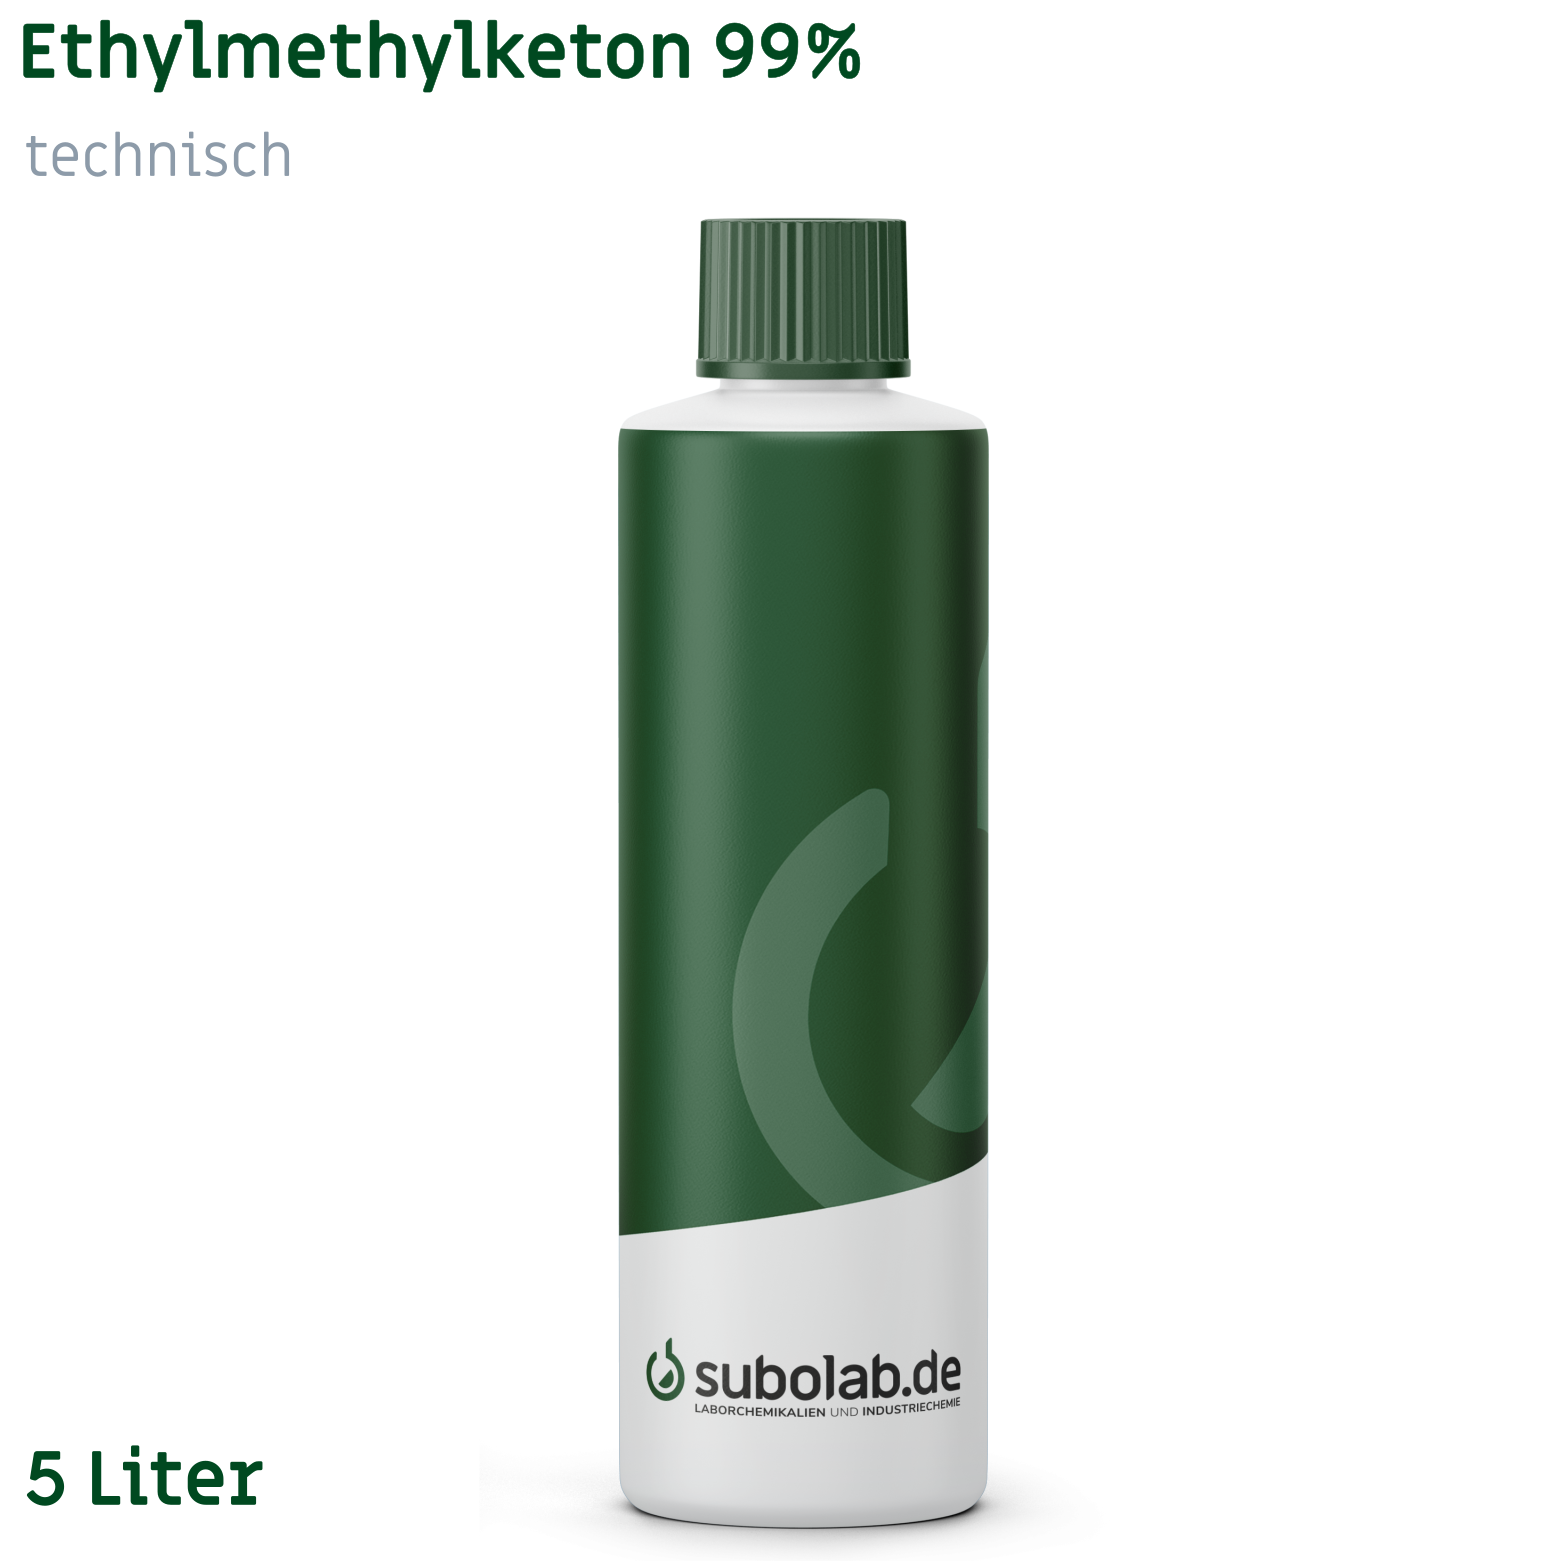 Bild von Ethylmethylketon 99% technisch (5 Liter)